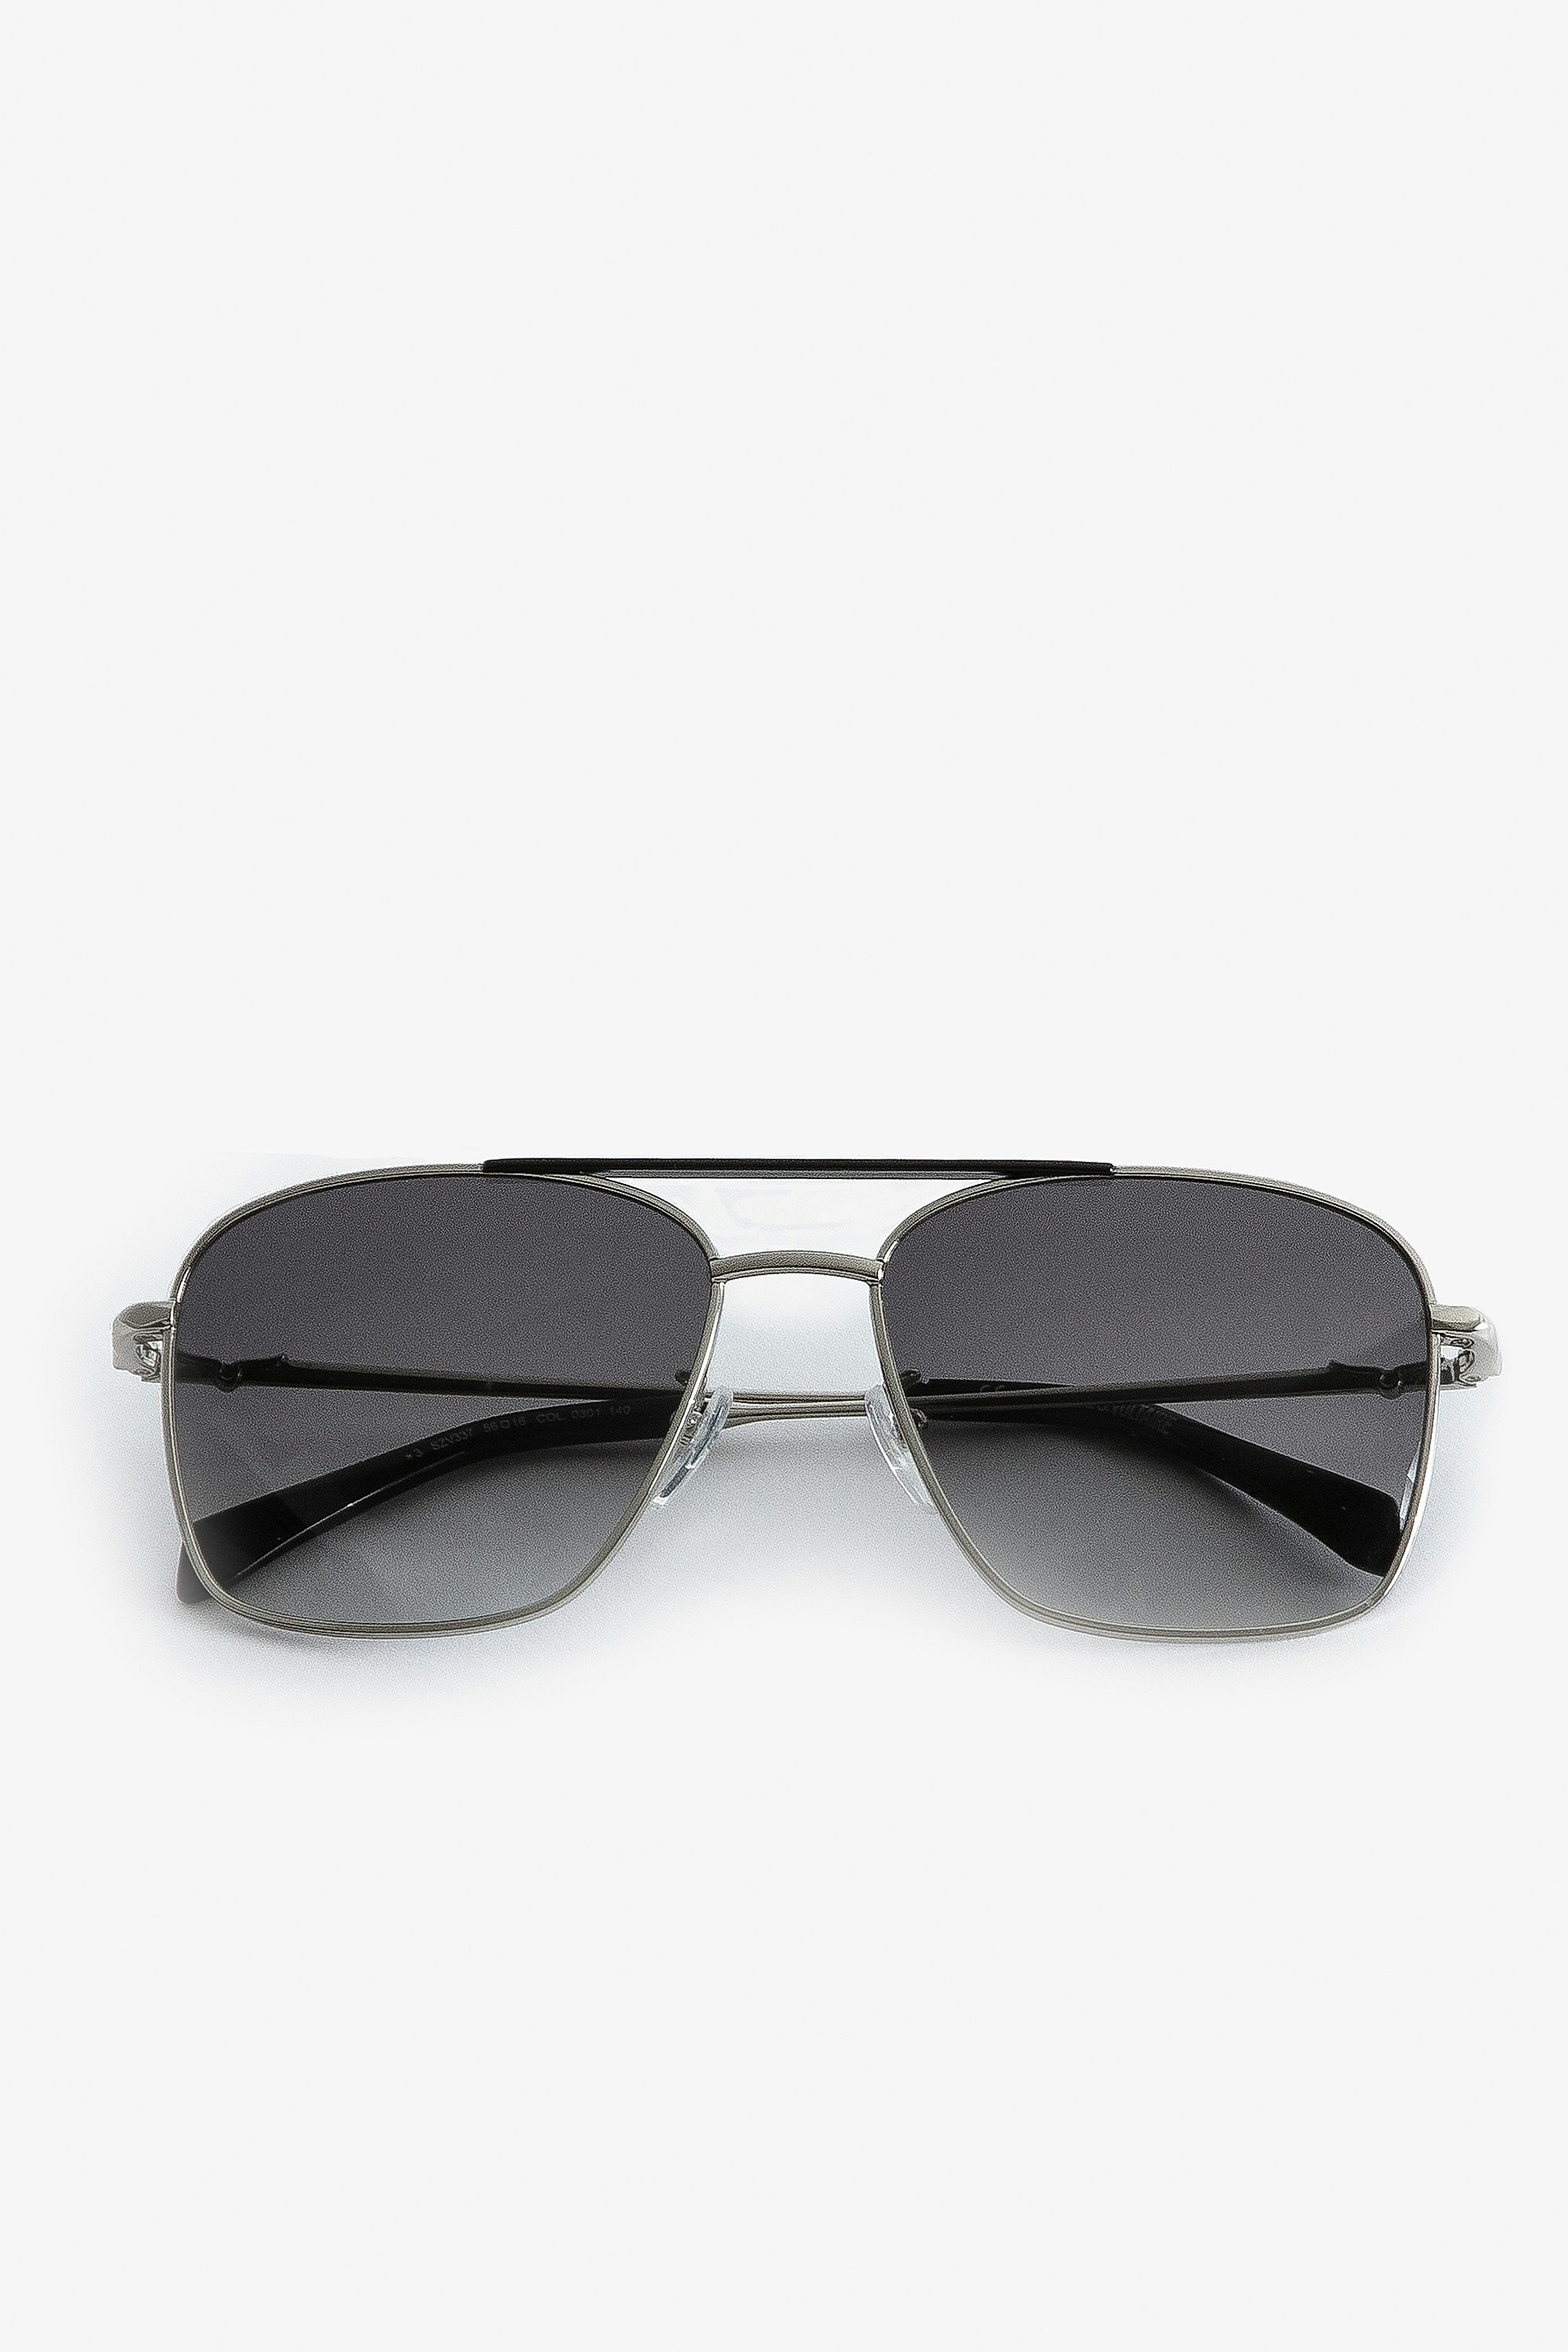 Gafas de sol Wings Aviator - Gafas de sol de aviador unisex de metal negro con cristales ahumados.